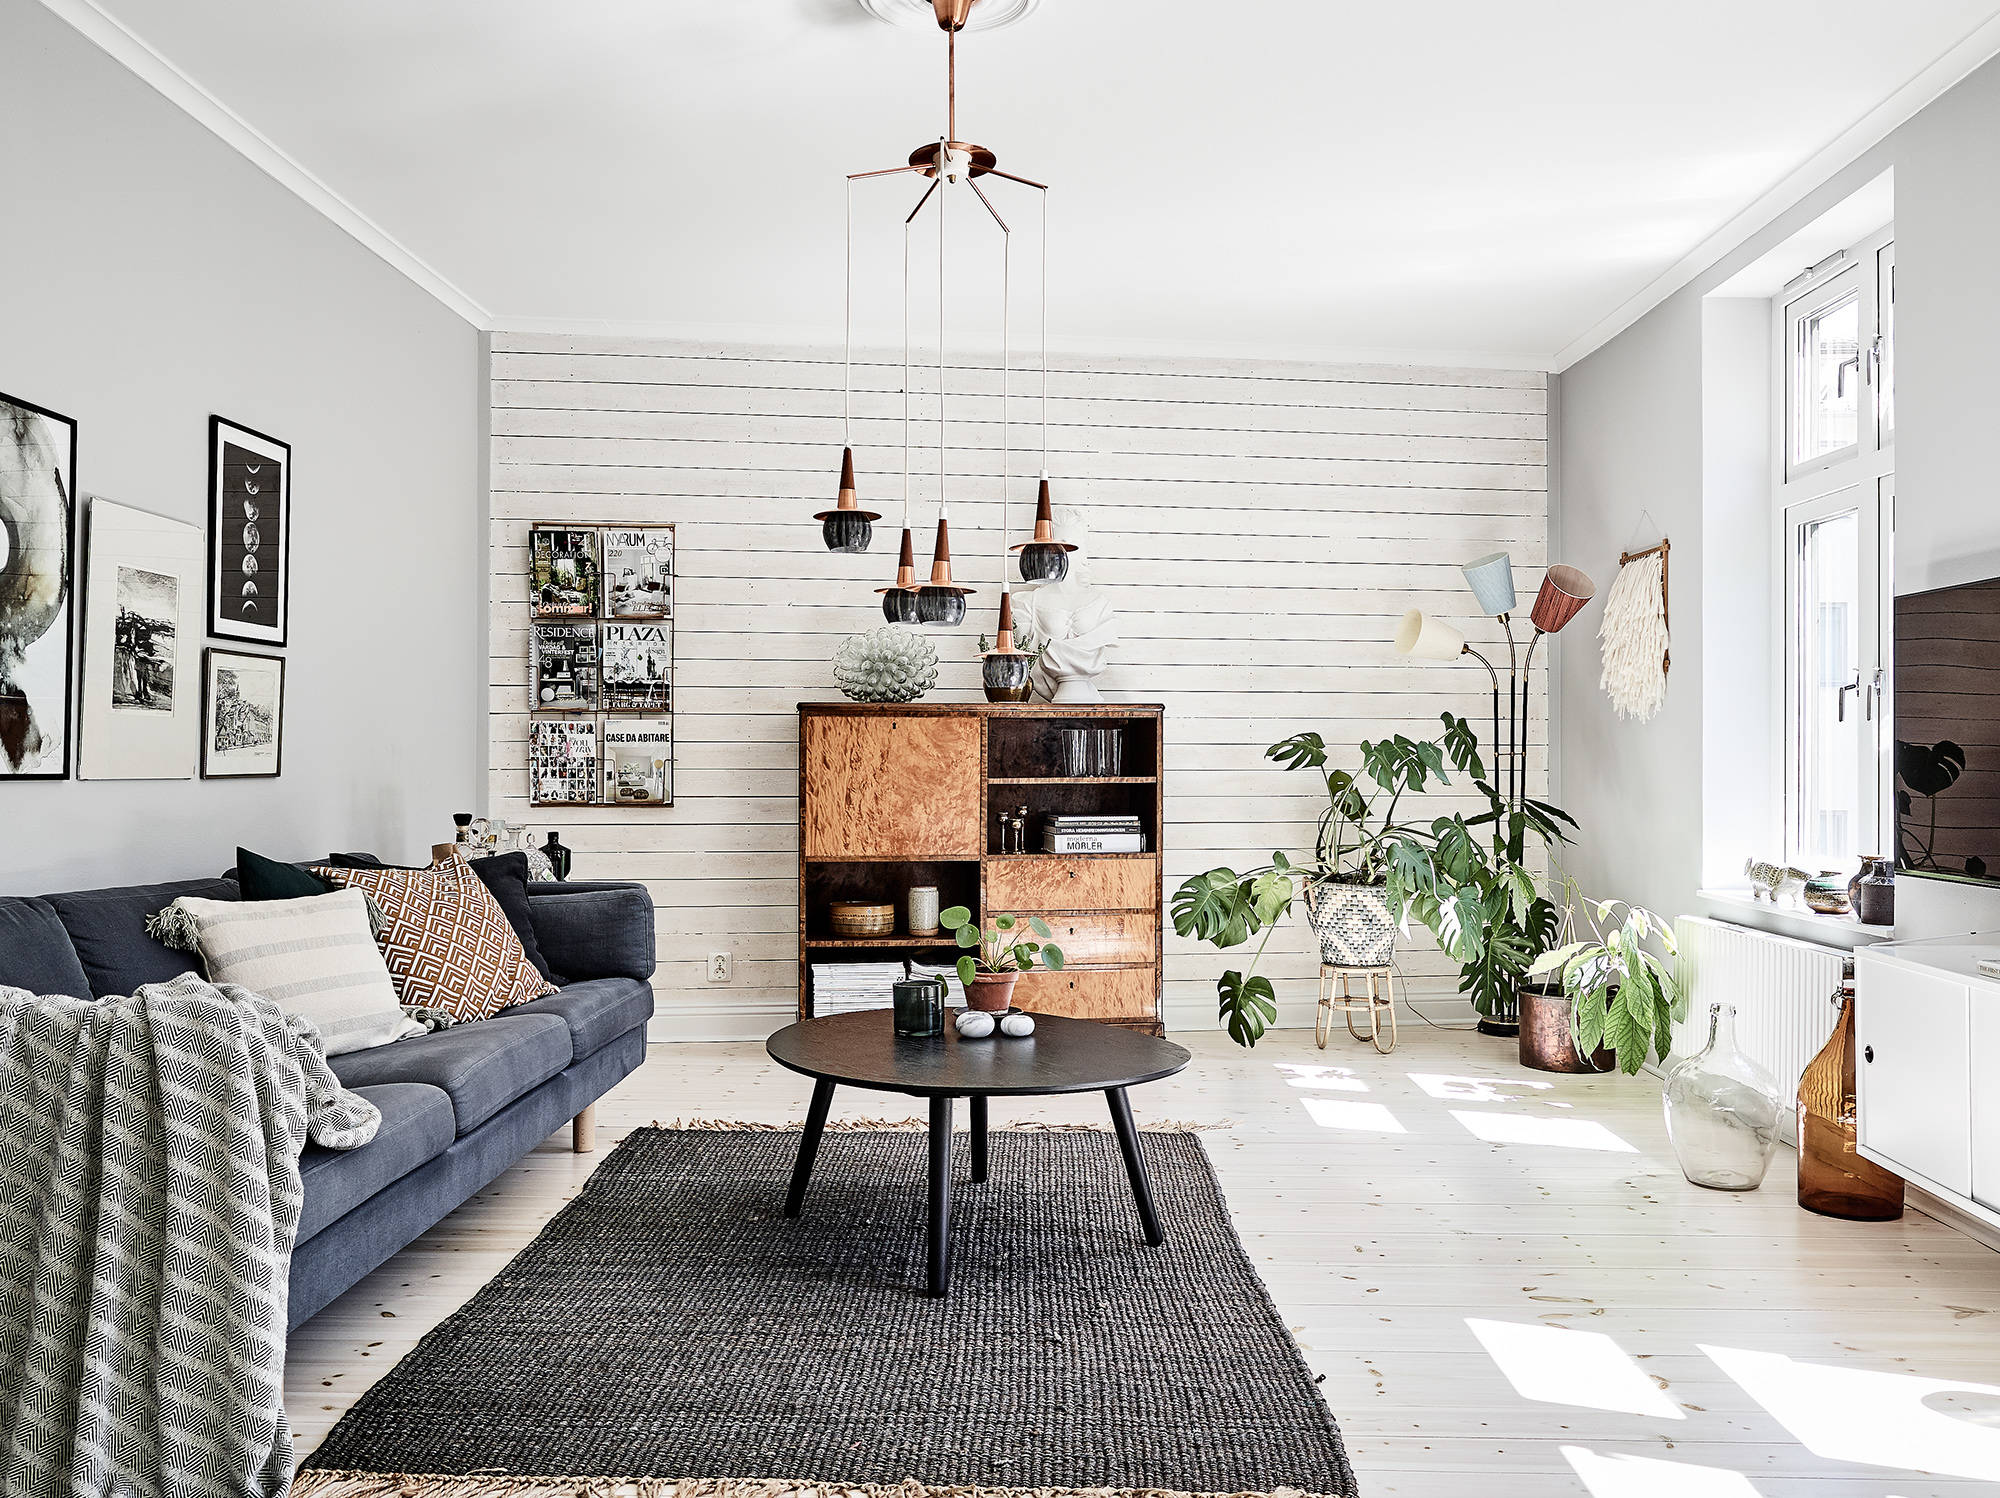 delikatissen piso sueco pared de madera paneles de madera estilo nórdico decoración pisos pequeños decoración interiores blog decoración nórdica 